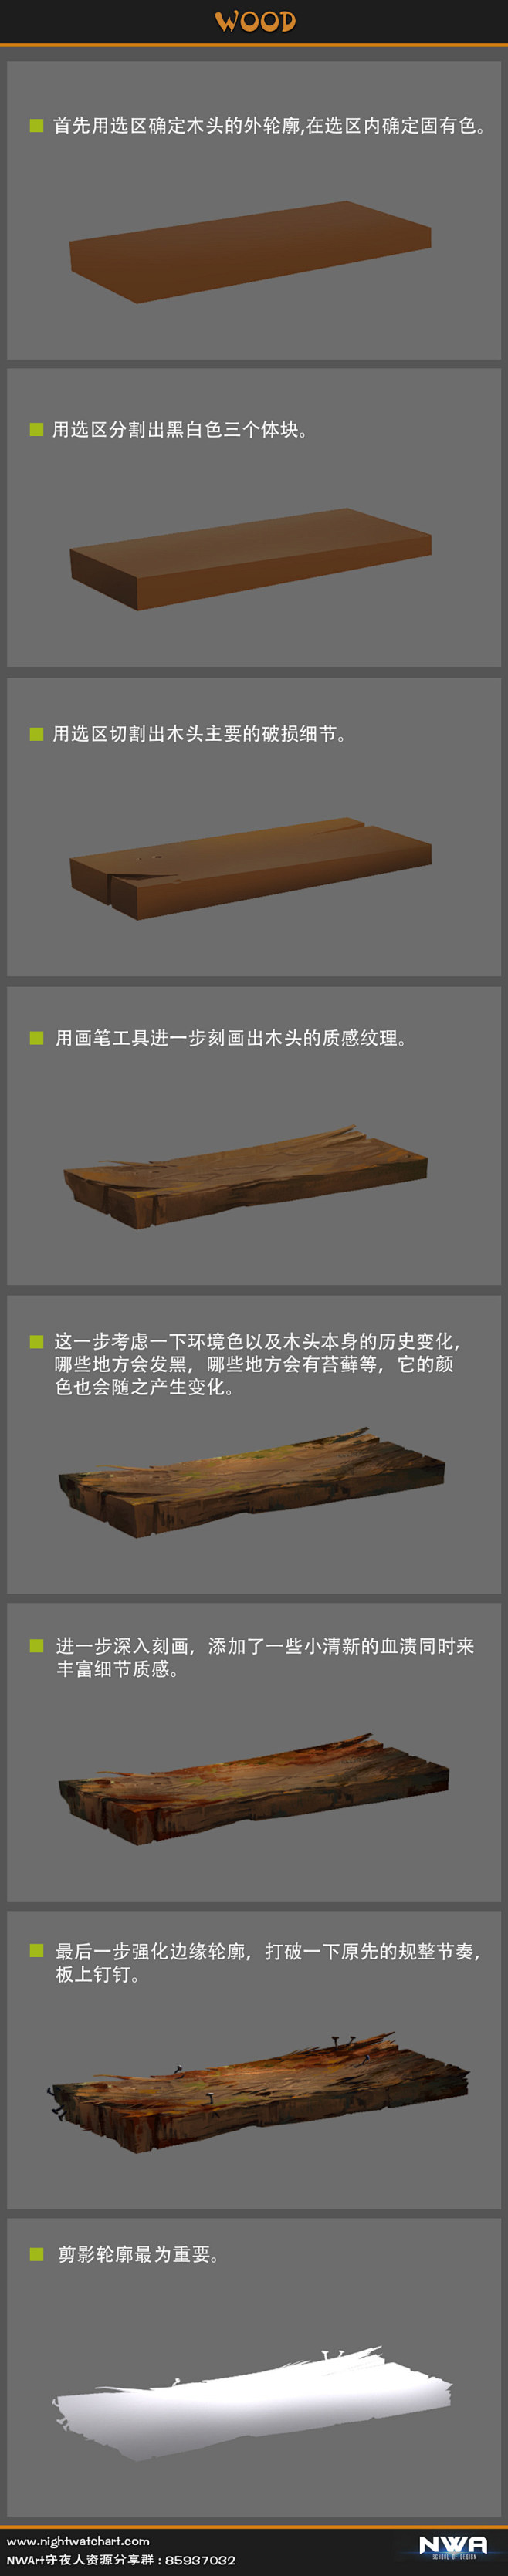 木头材质